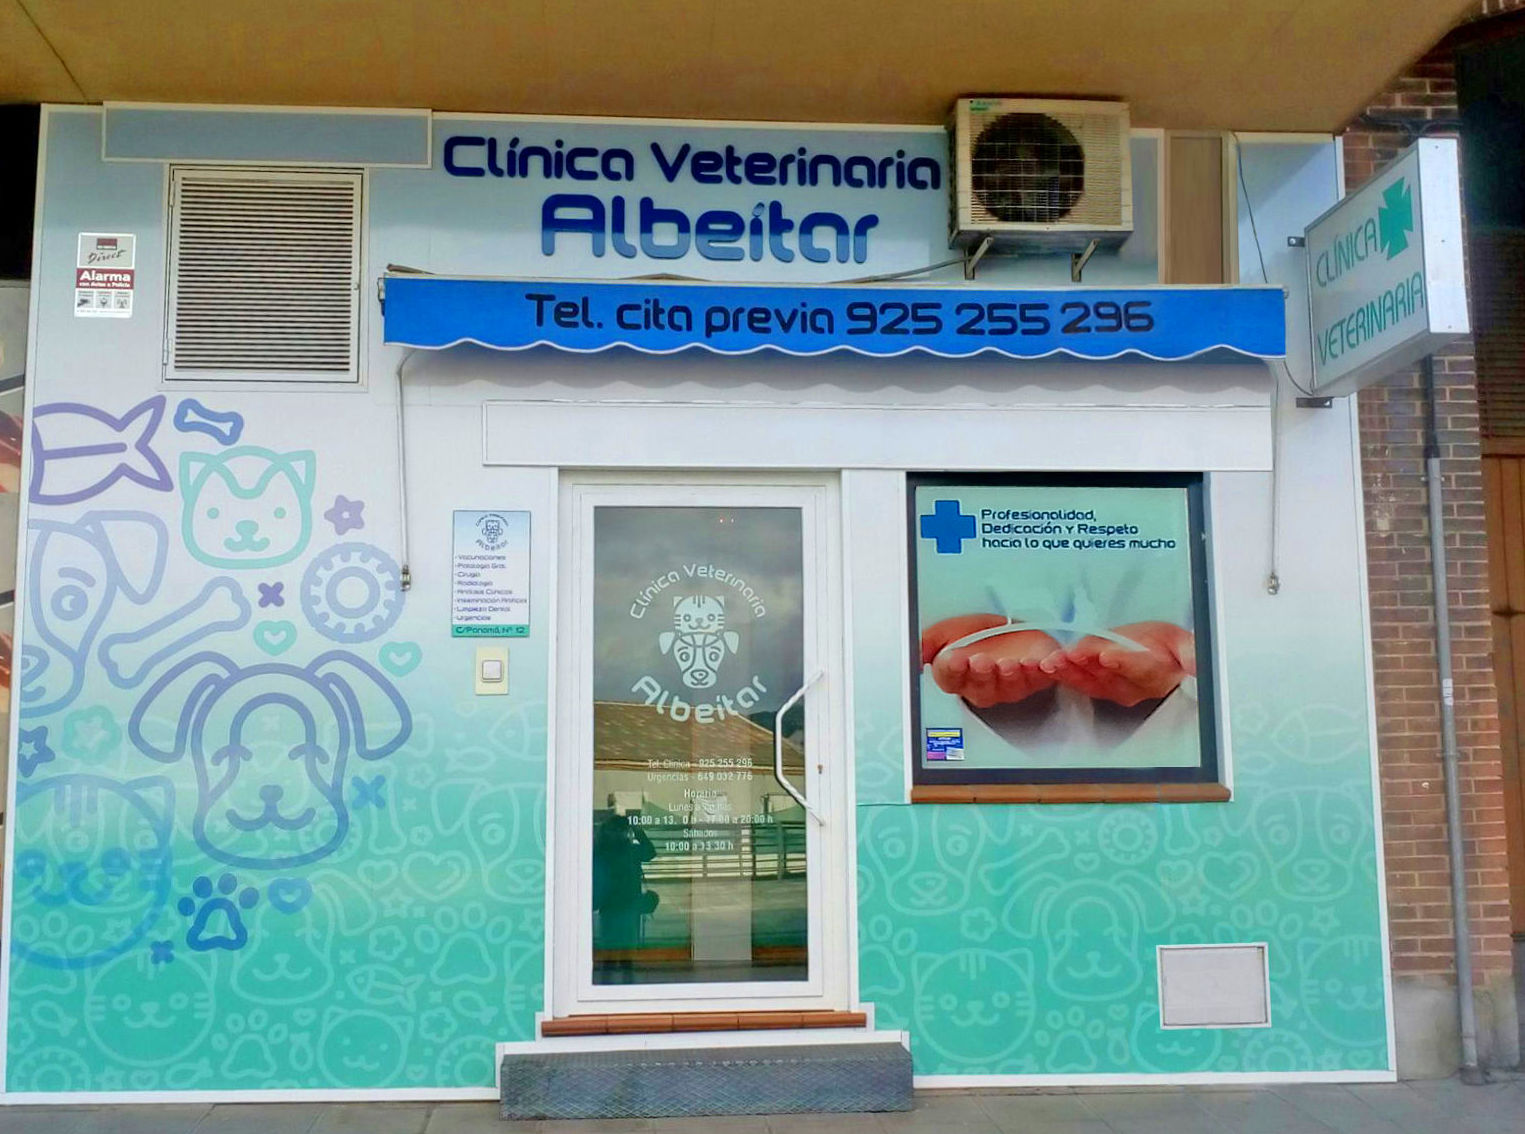 Foto 6 de Veterinarios en Toledo | Clínica Veterinaria Albeitar